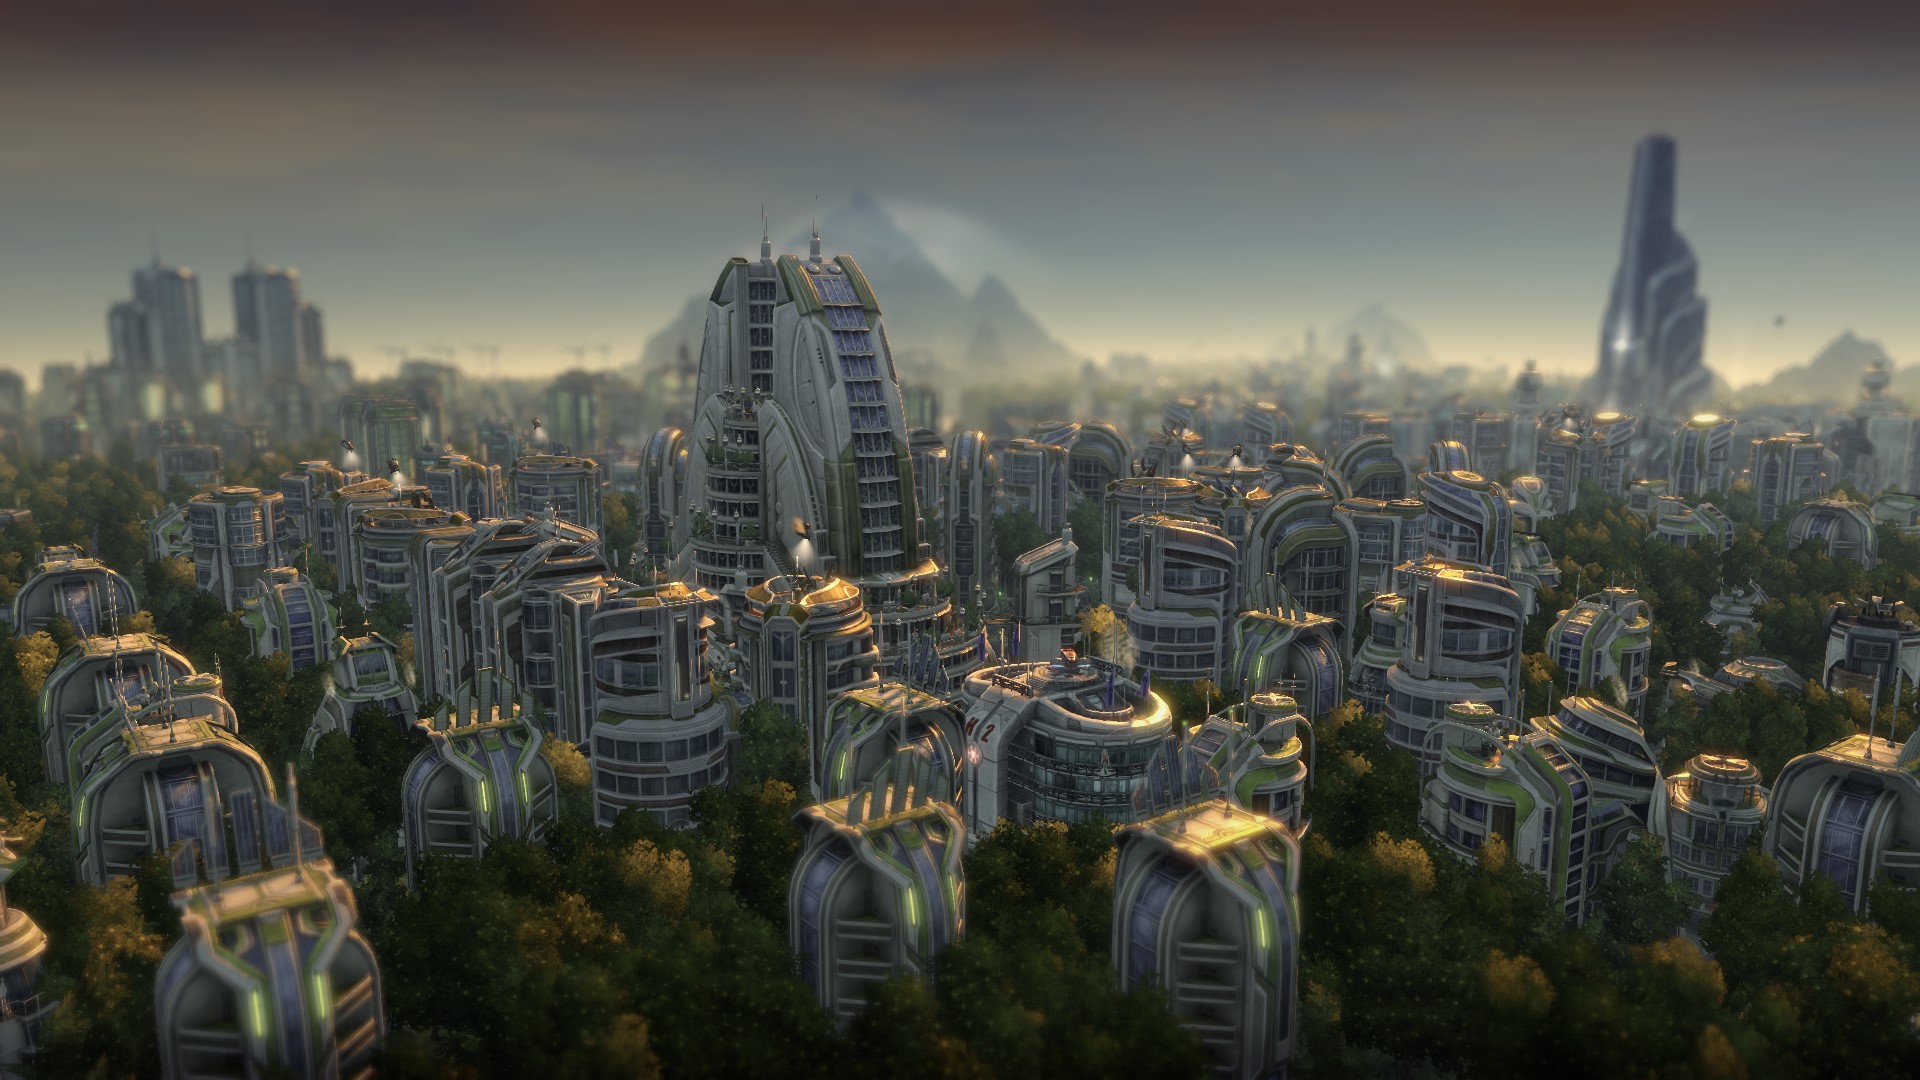 critique of global city concept